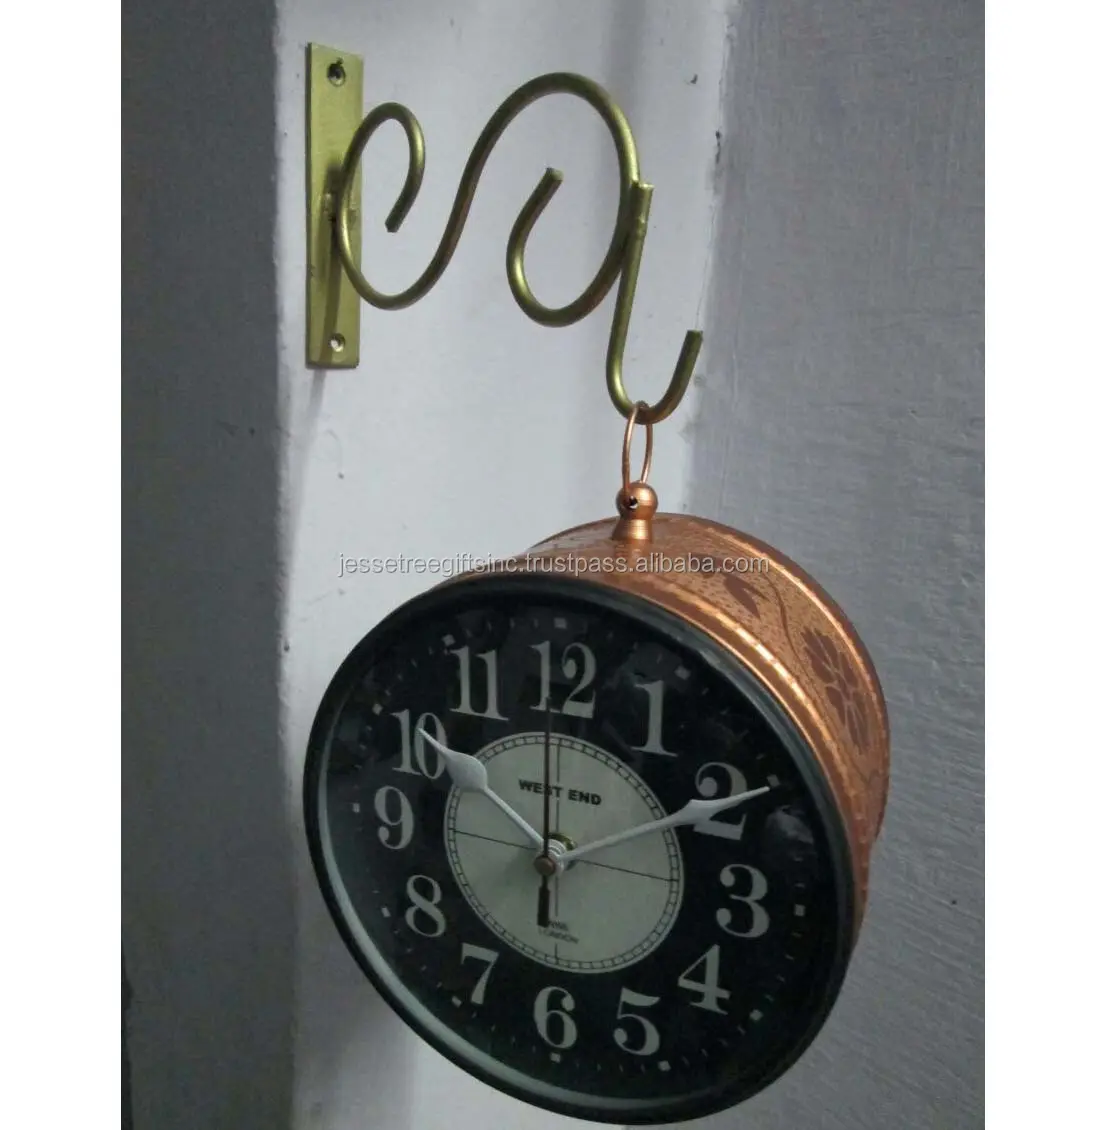 Jam dinding Analog logam dengan lapisan tembaga Finishing melengkung desain kualitas asli untuk dekorasi rumah harga grosir